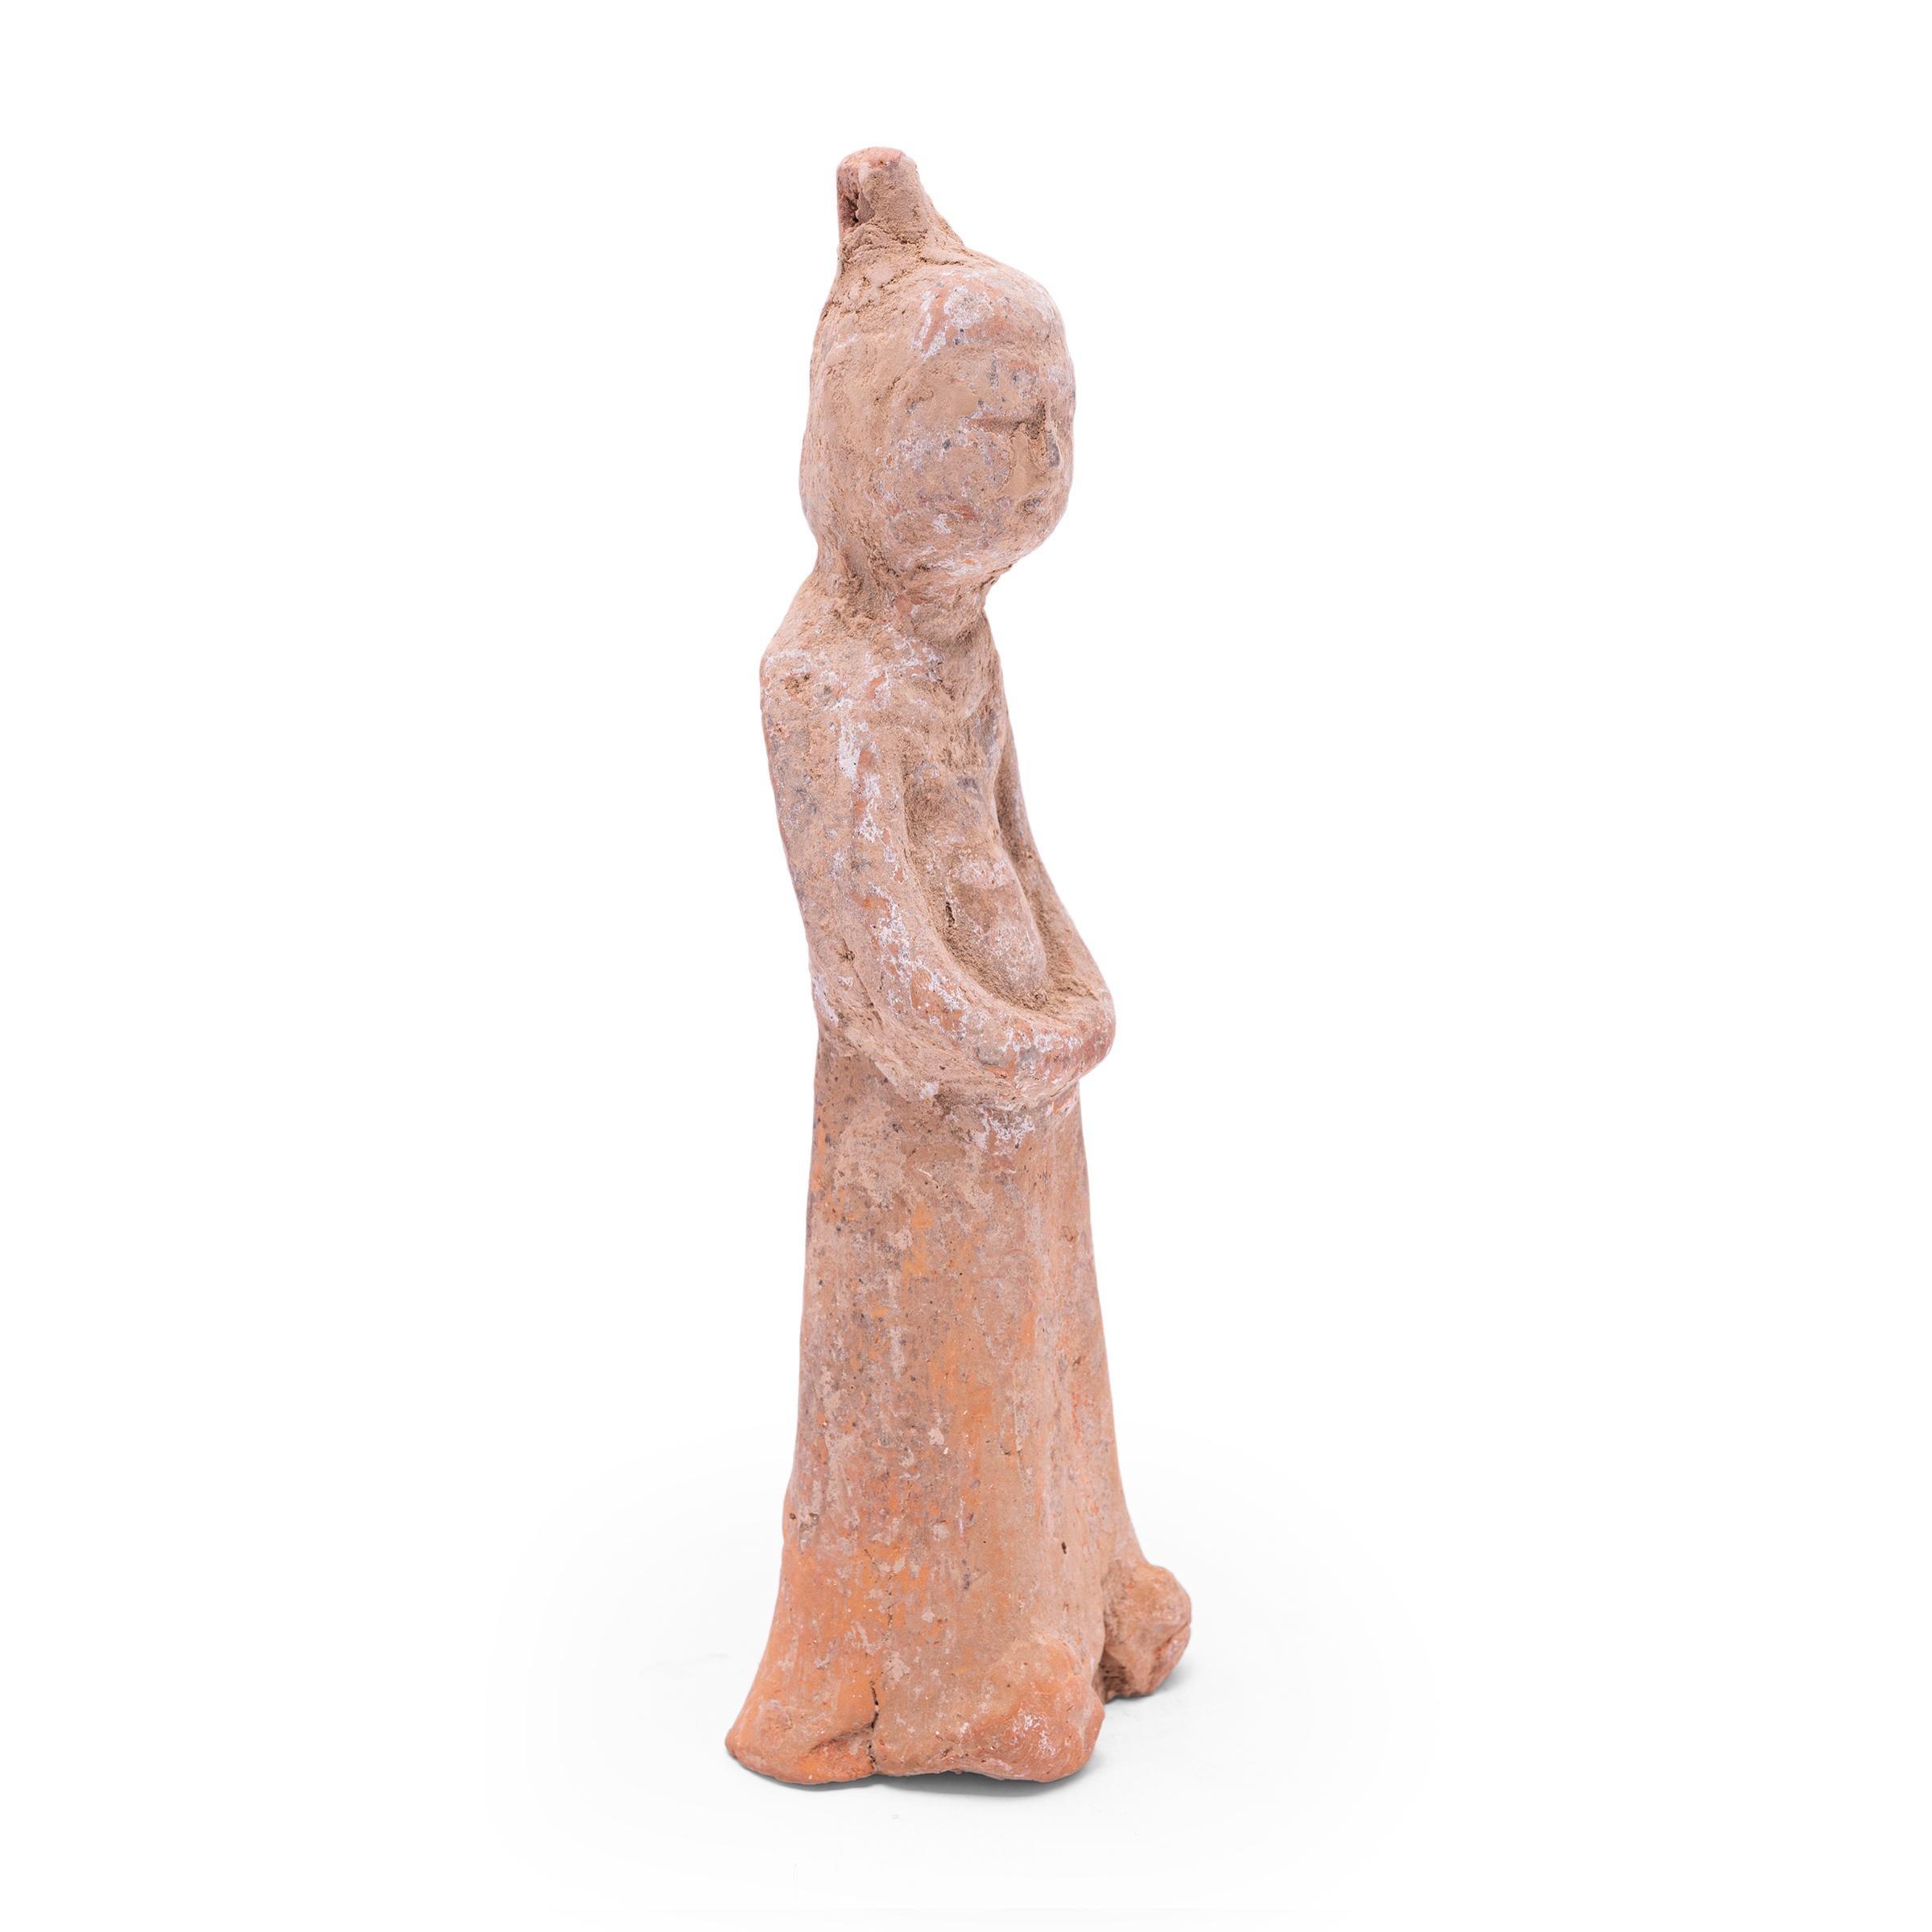 Moulée en terre cuite, cette petite sculpture est un type de figurine funéraire vieille de plusieurs siècles, connue sous le nom de míngqì. Ces figurines étaient placées dans les tombes des personnes de haut rang pour leur assurer un voyage en toute